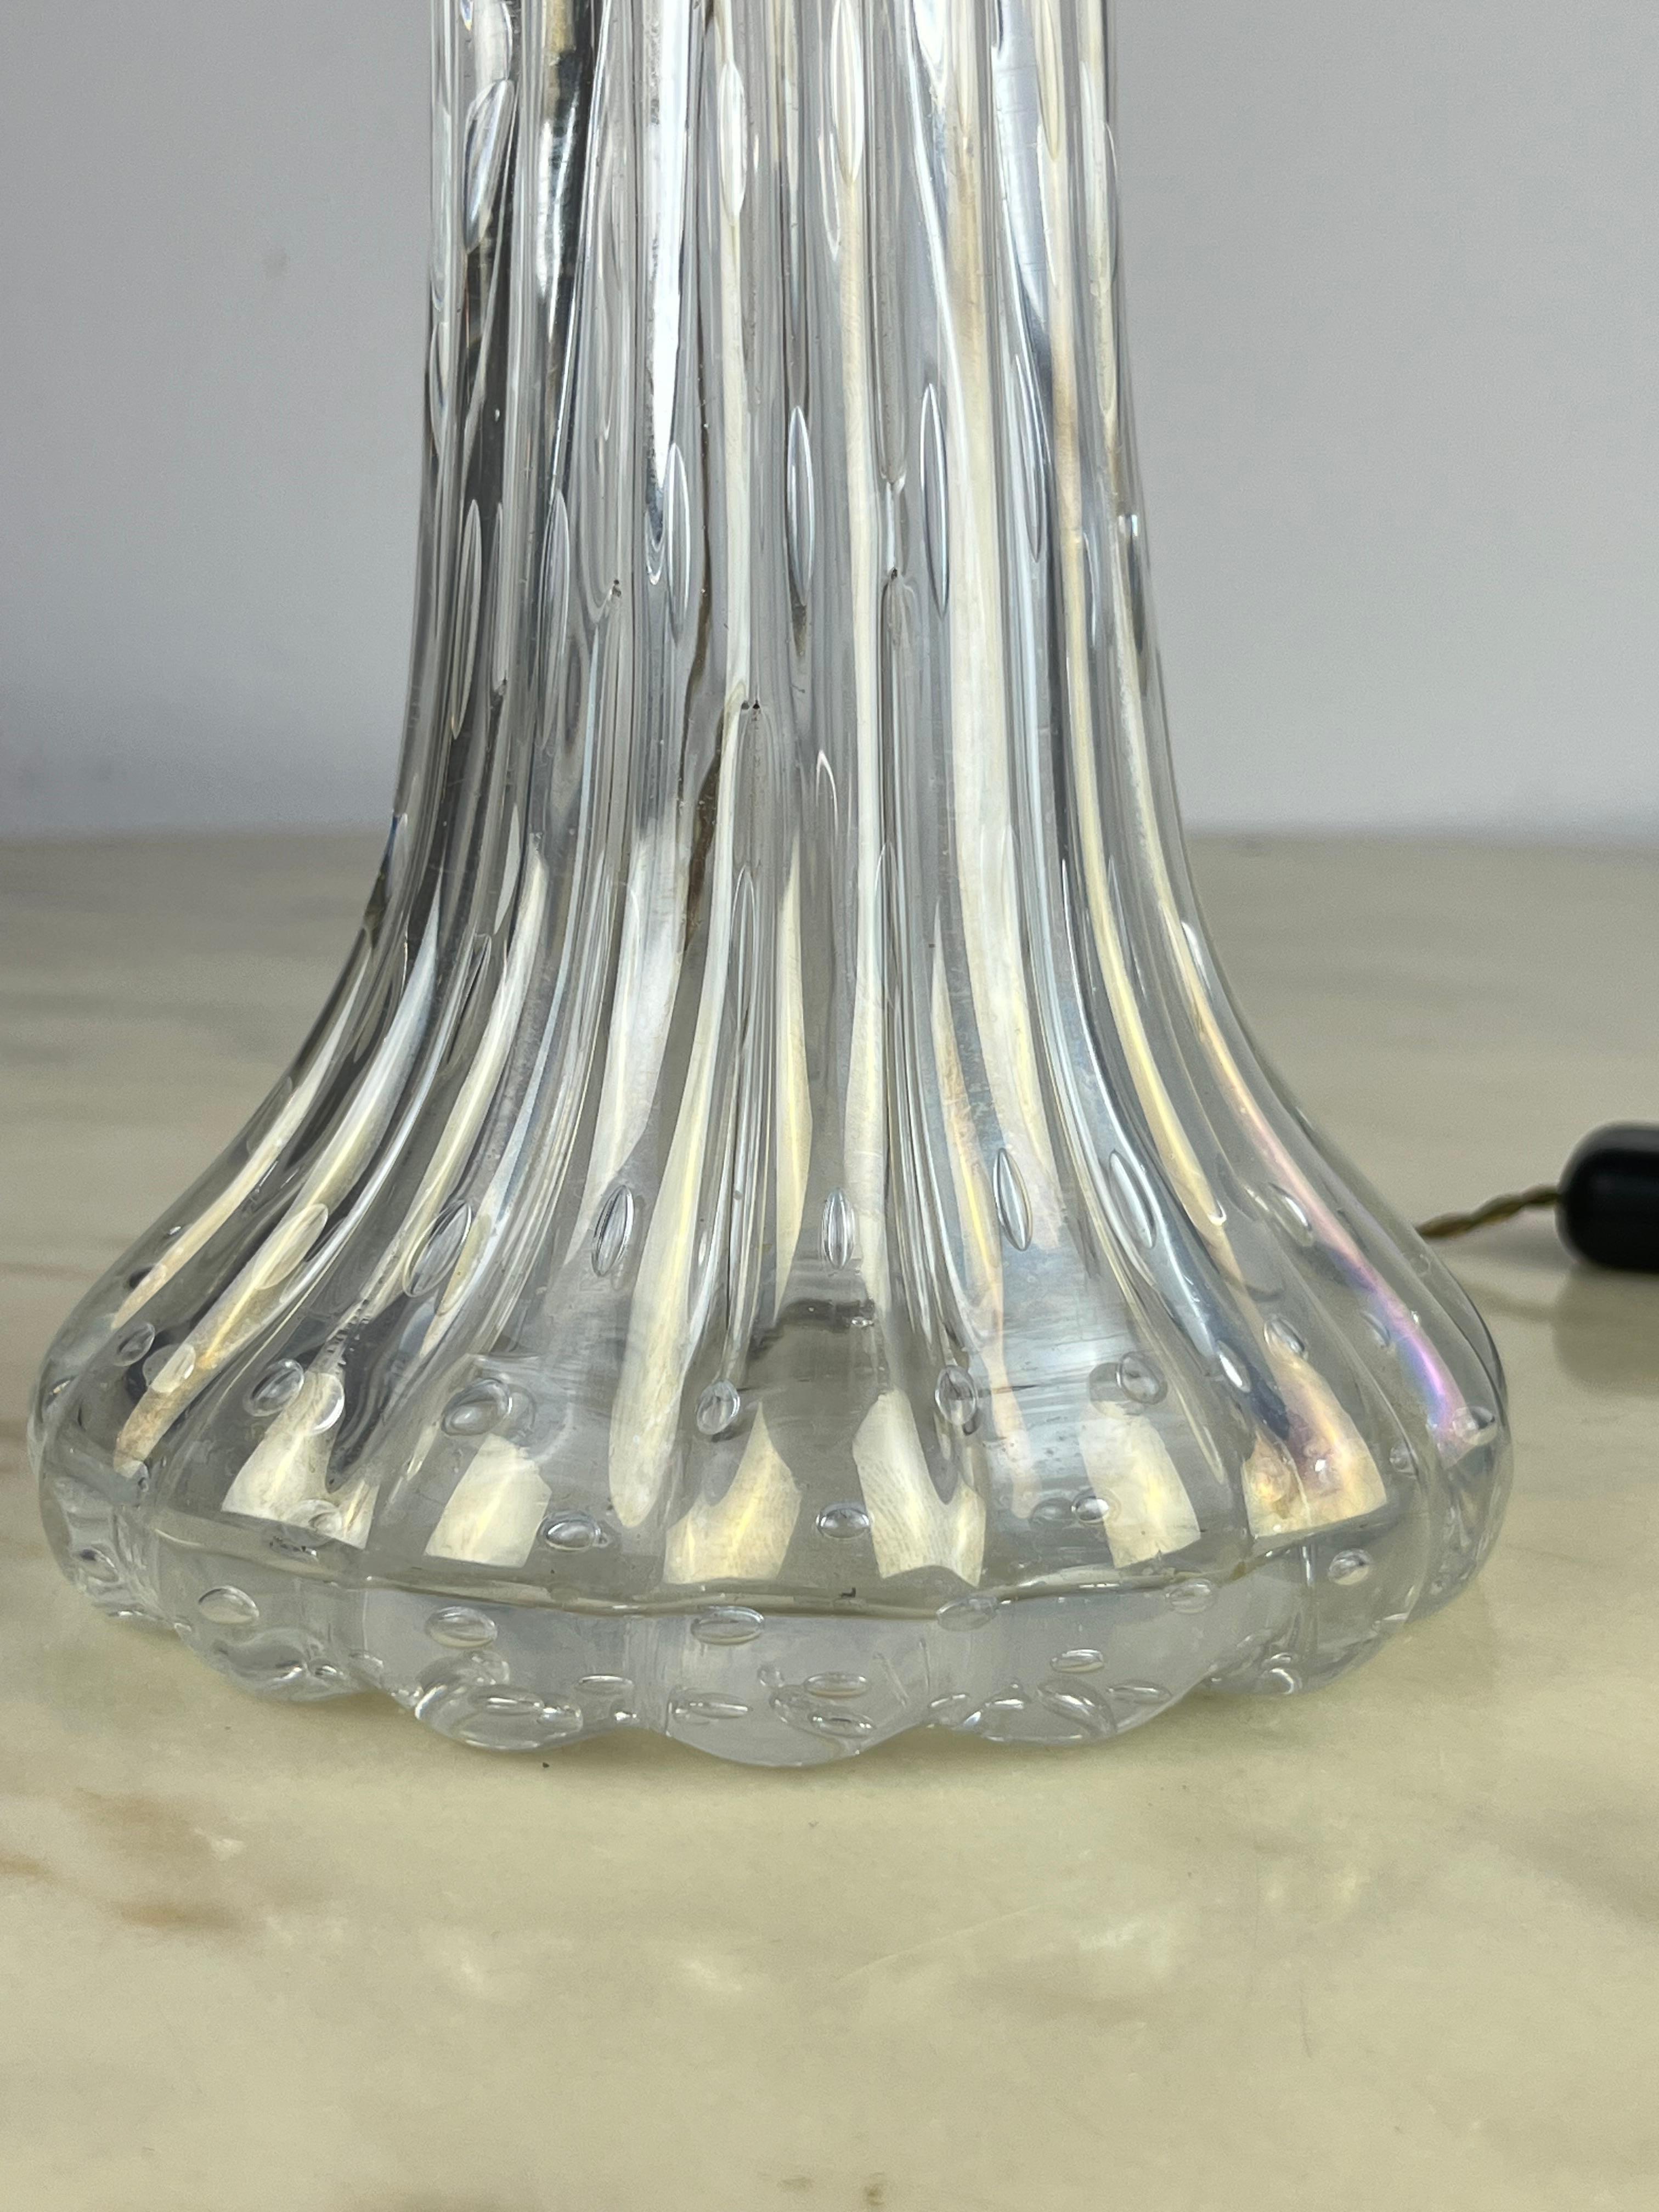 Lampe de table en verre de Murano attribuée à Barovier&Toso, Italie, 1950
Il a toujours appartenu à ma famille. Elle a été achetée par mes arrière-grands-parents à Venise en 1953, lors d'un voyage d'affaires de mon ancêtre qui négociait des métaux